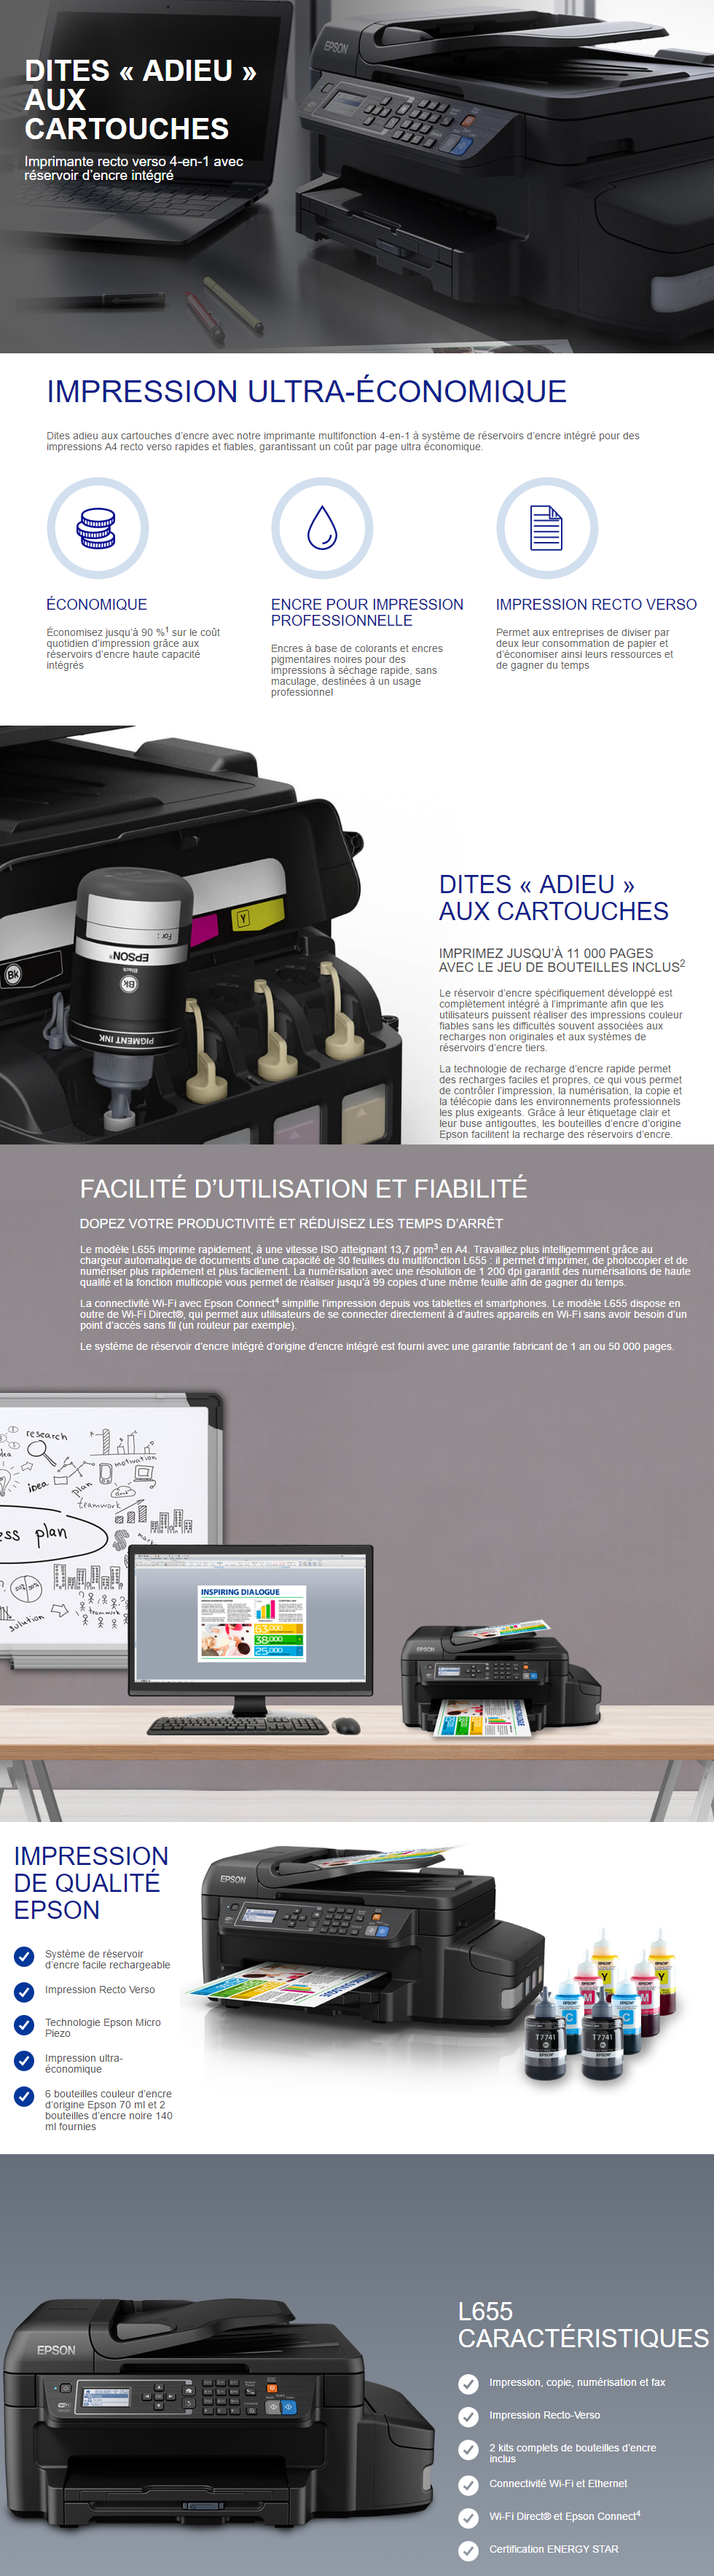 Acheter Epson EcoTank L655 Imprimante multifonction à réservoirs rechargeables (C11CE71402) Maroc